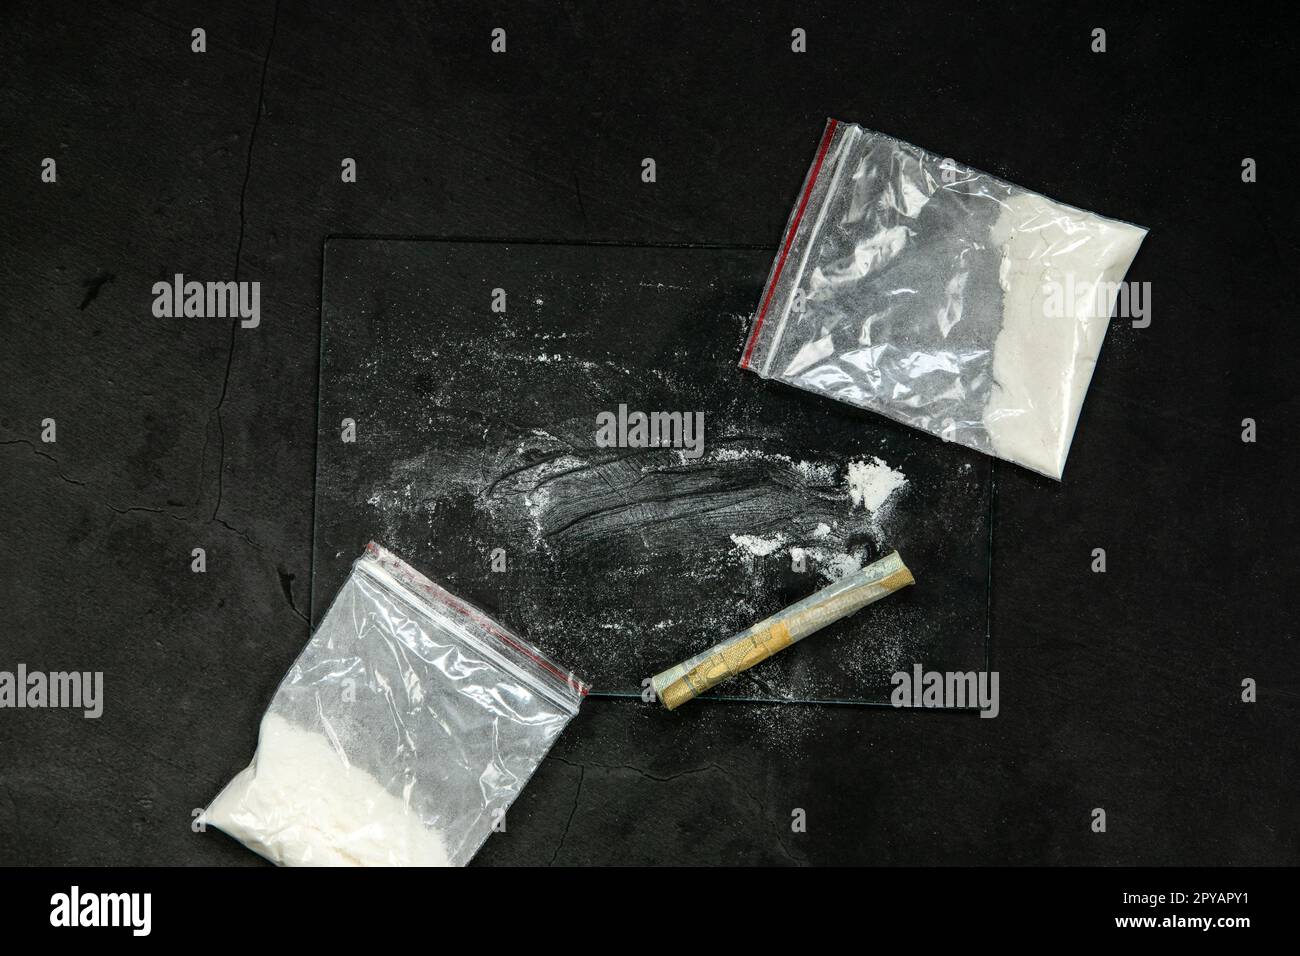 Lignes de poudre de cocaïne, billets roulés et drogues dans une poche de sac en plastique sur fond de verre noir, vue du dessus. Notion de toxicomanie Banque D'Images